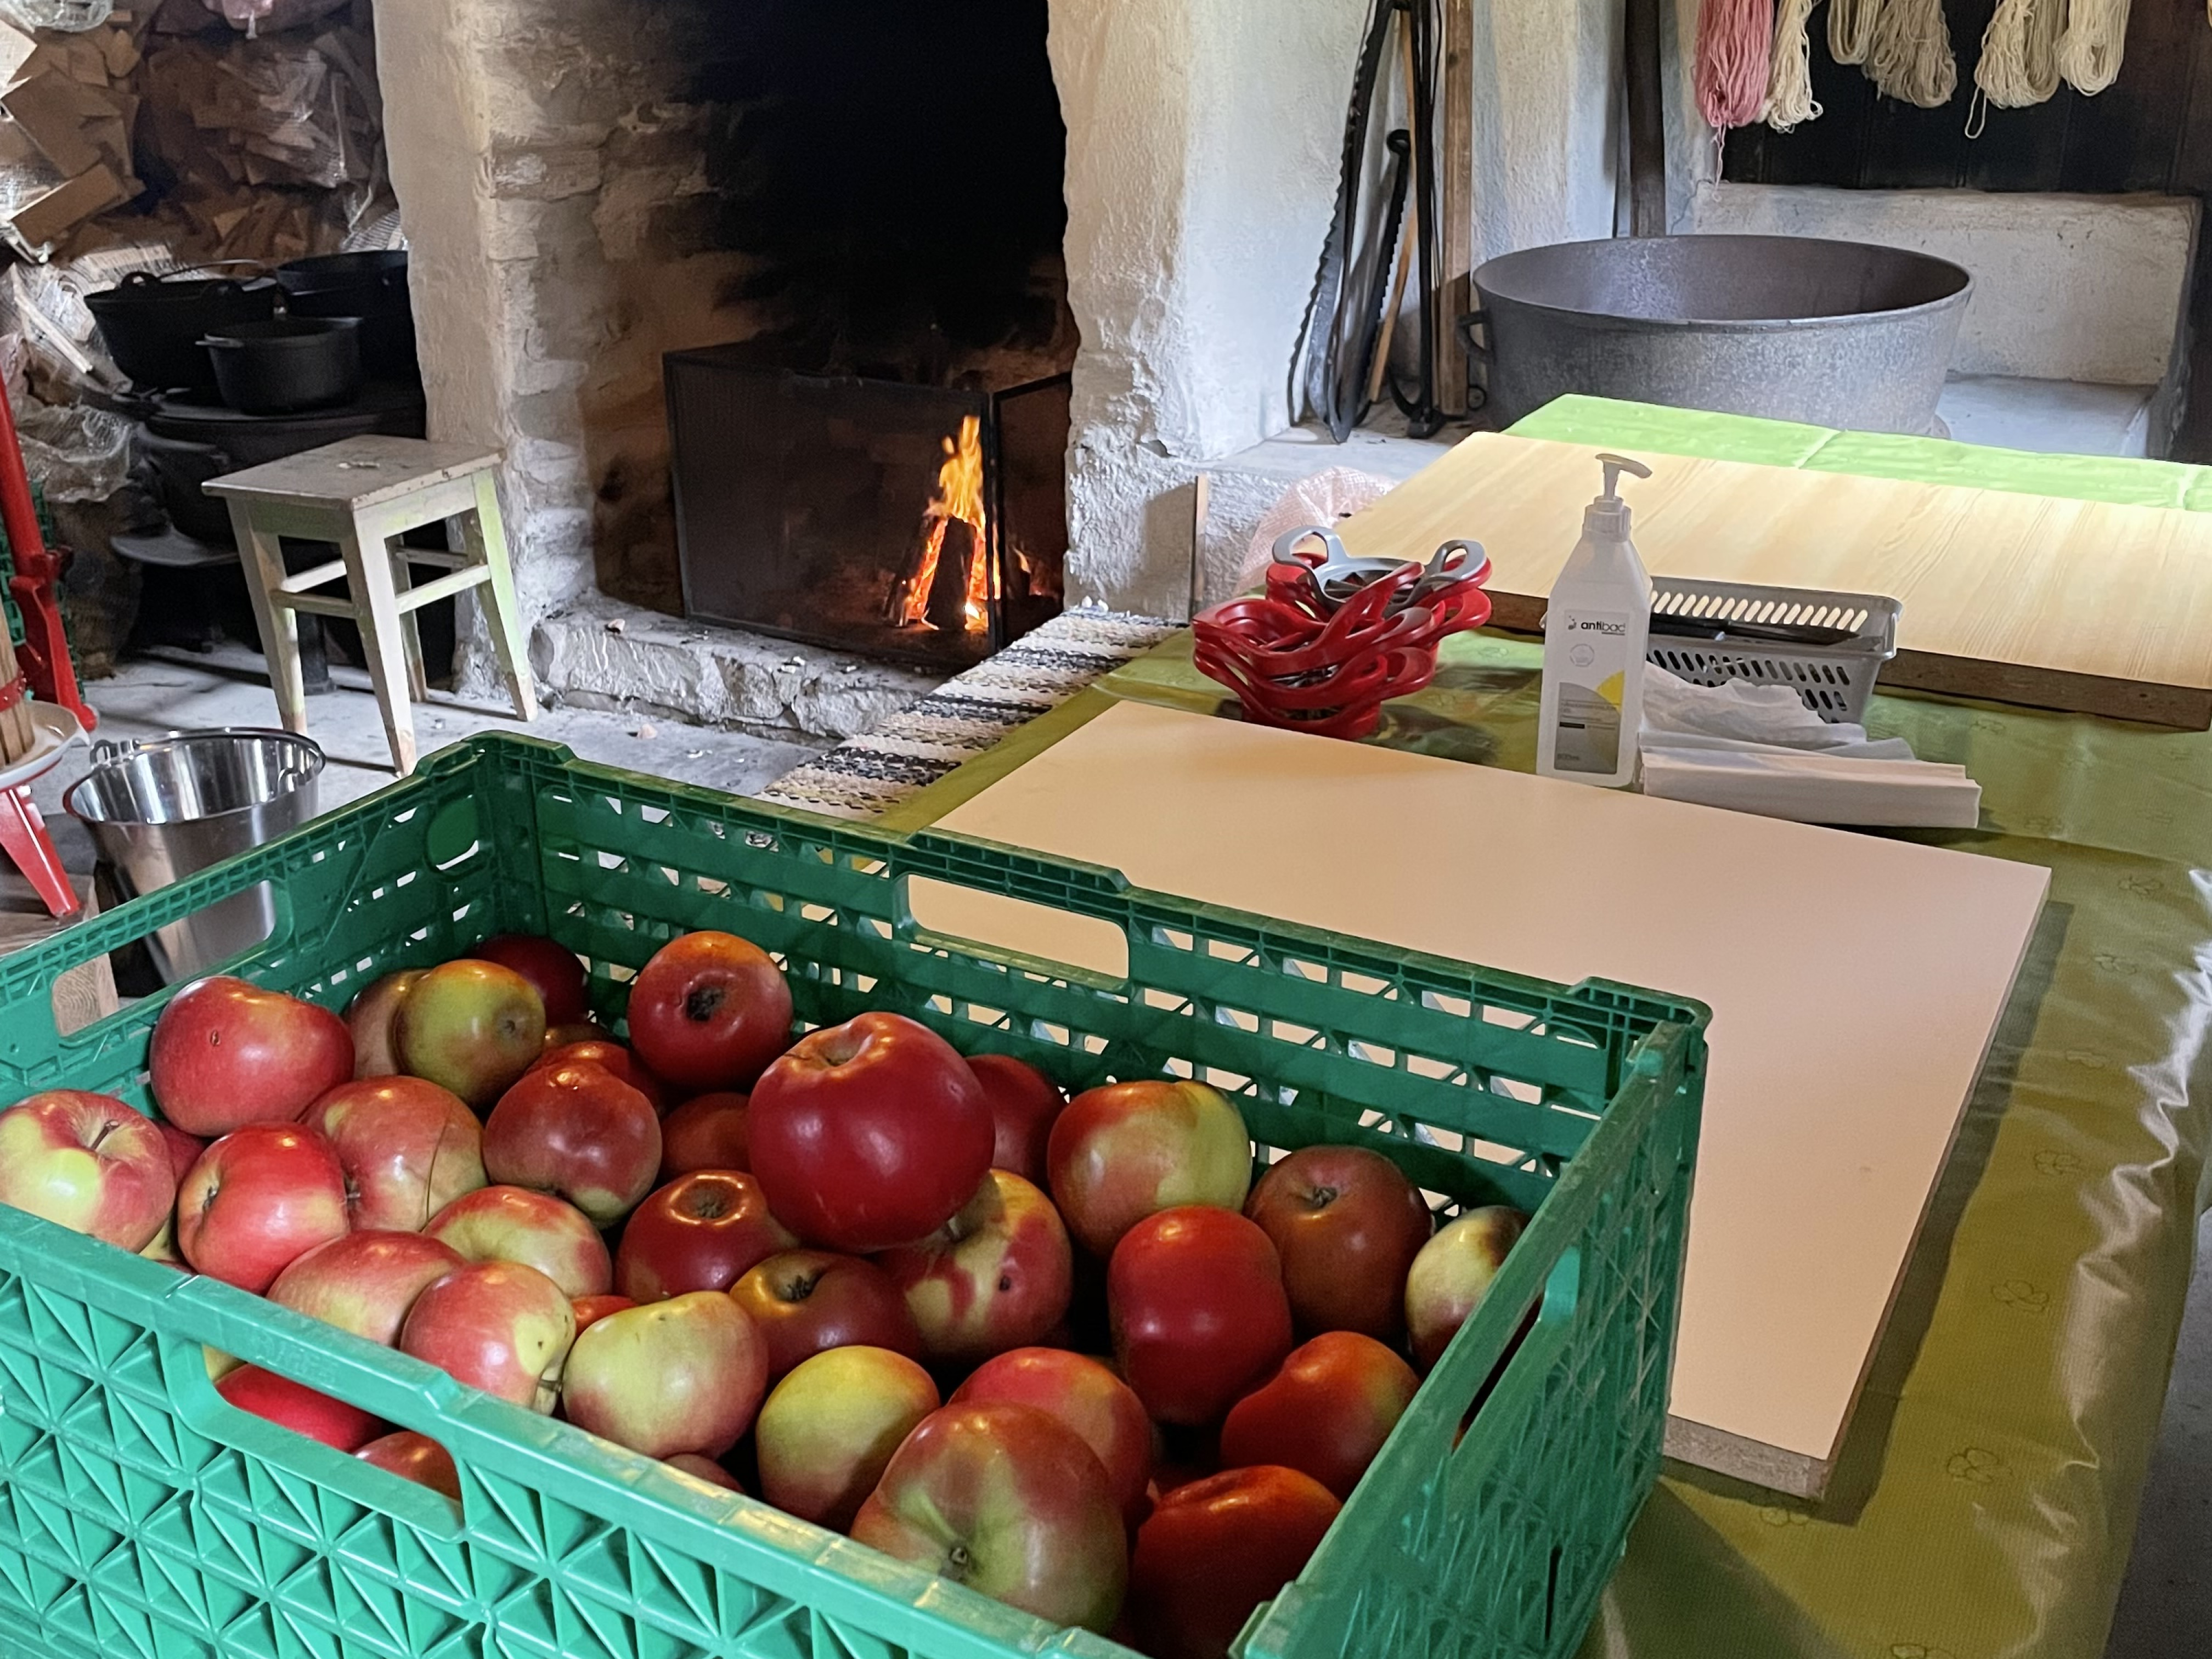 Eit bord med epler og utstyr til eplepressing. Bål i grua.